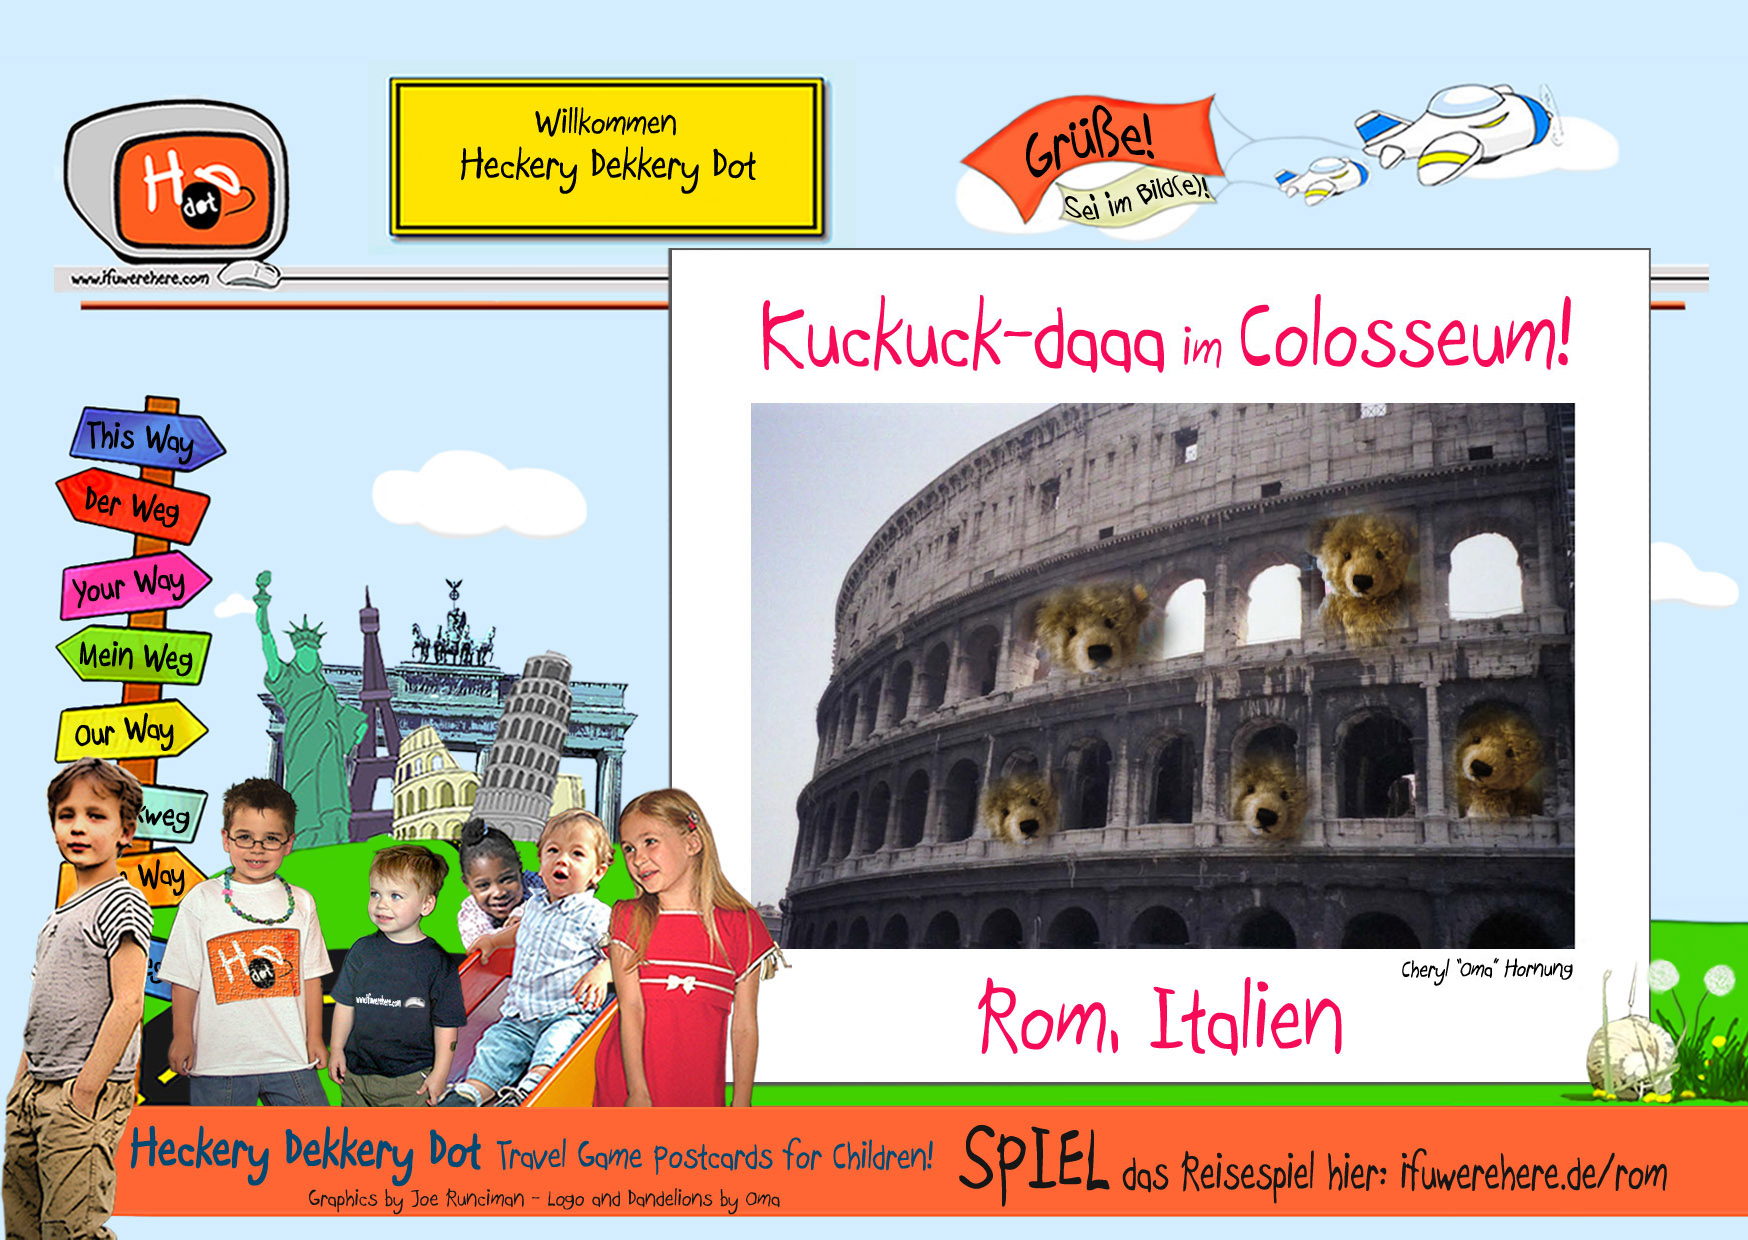 (4) Schnapp den Teddy und komm zum Colosseum!